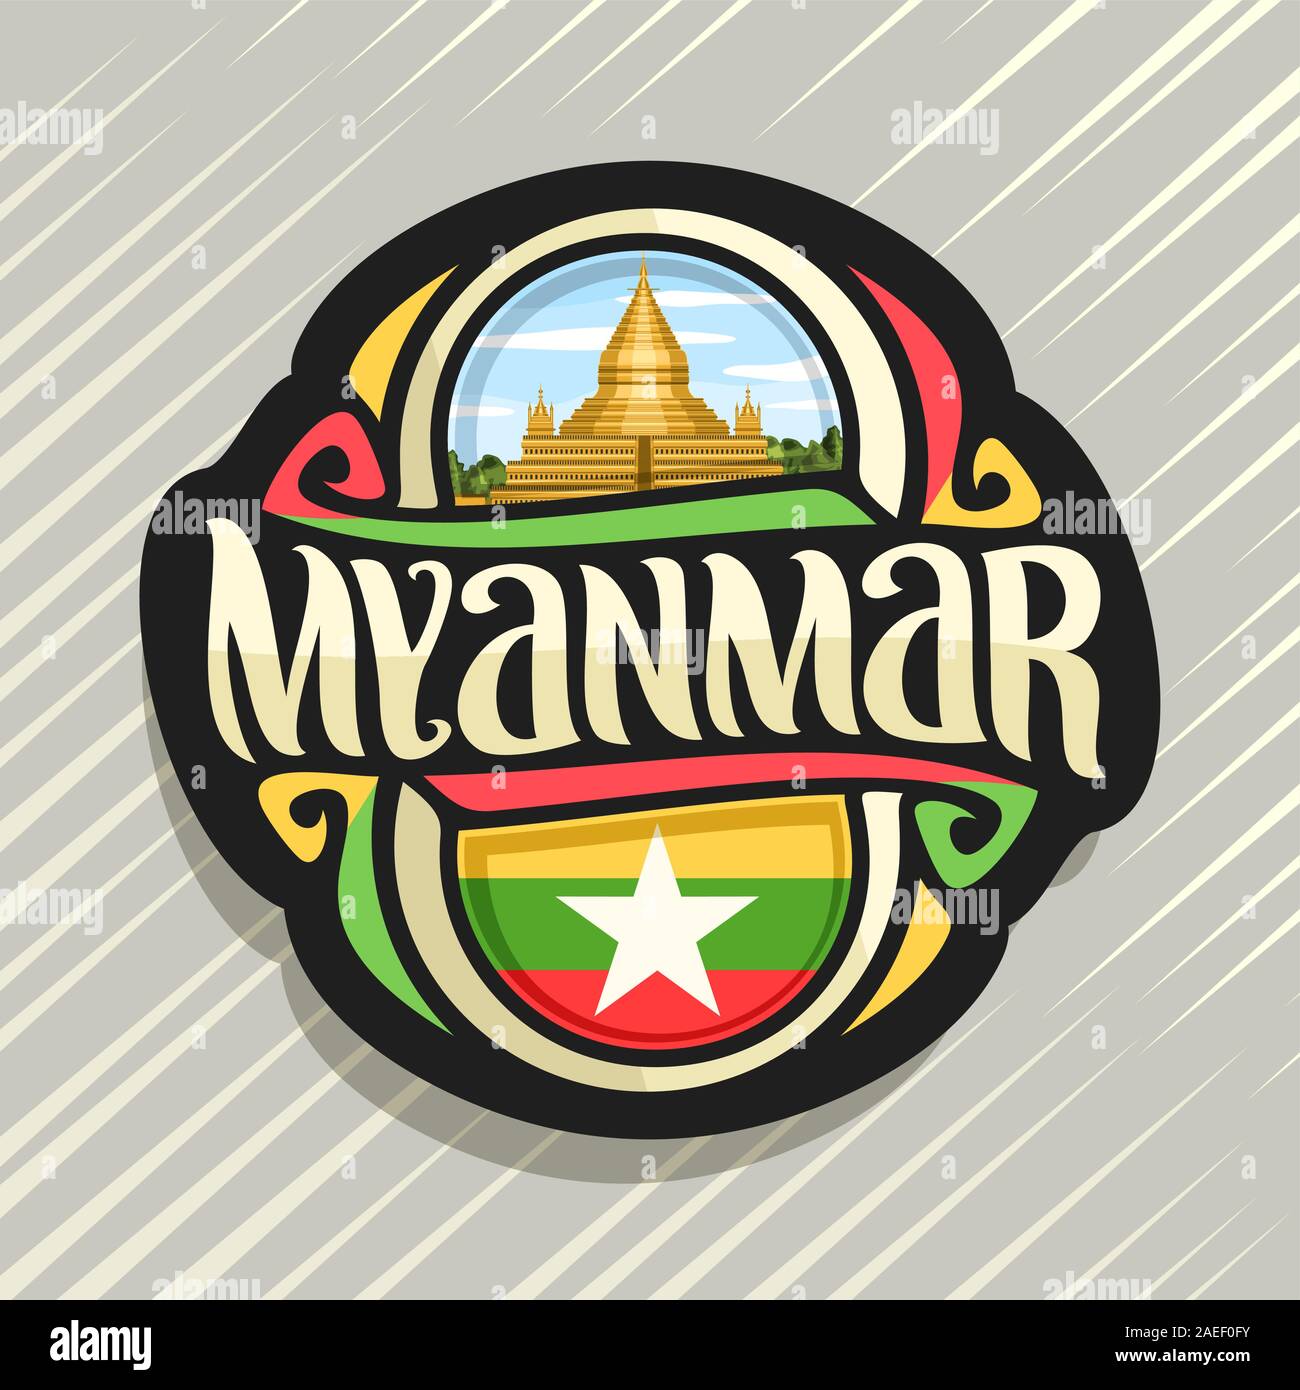 Vektor logo für Myanmar, Kühlschrank Magnet mit myanmarese State Flag, original brush Schrift für Wort Myanmar und nationalen myanmarese Symbol - S Stock Vektor